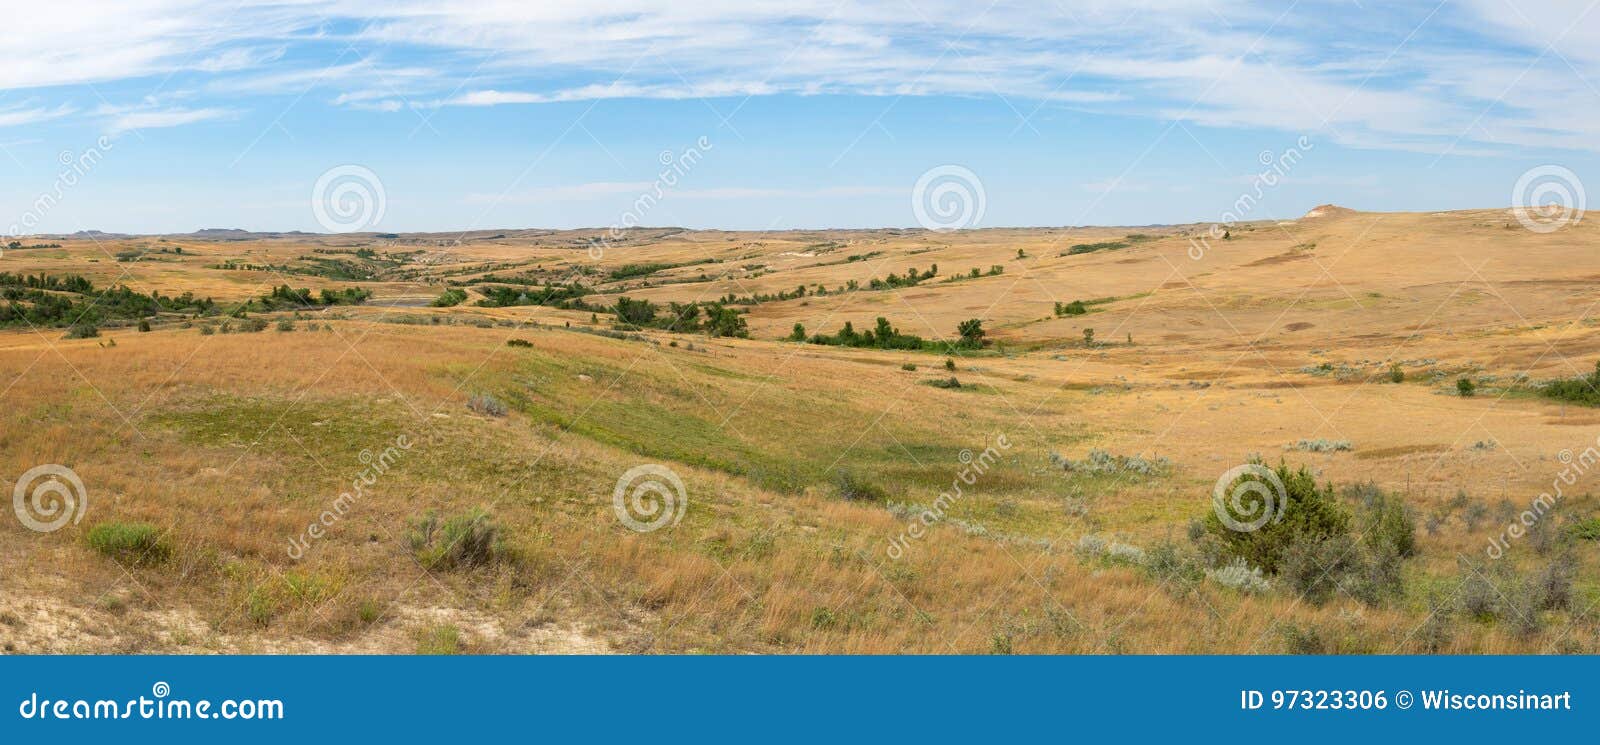 prairie, grass, banner, panorama, panoramic